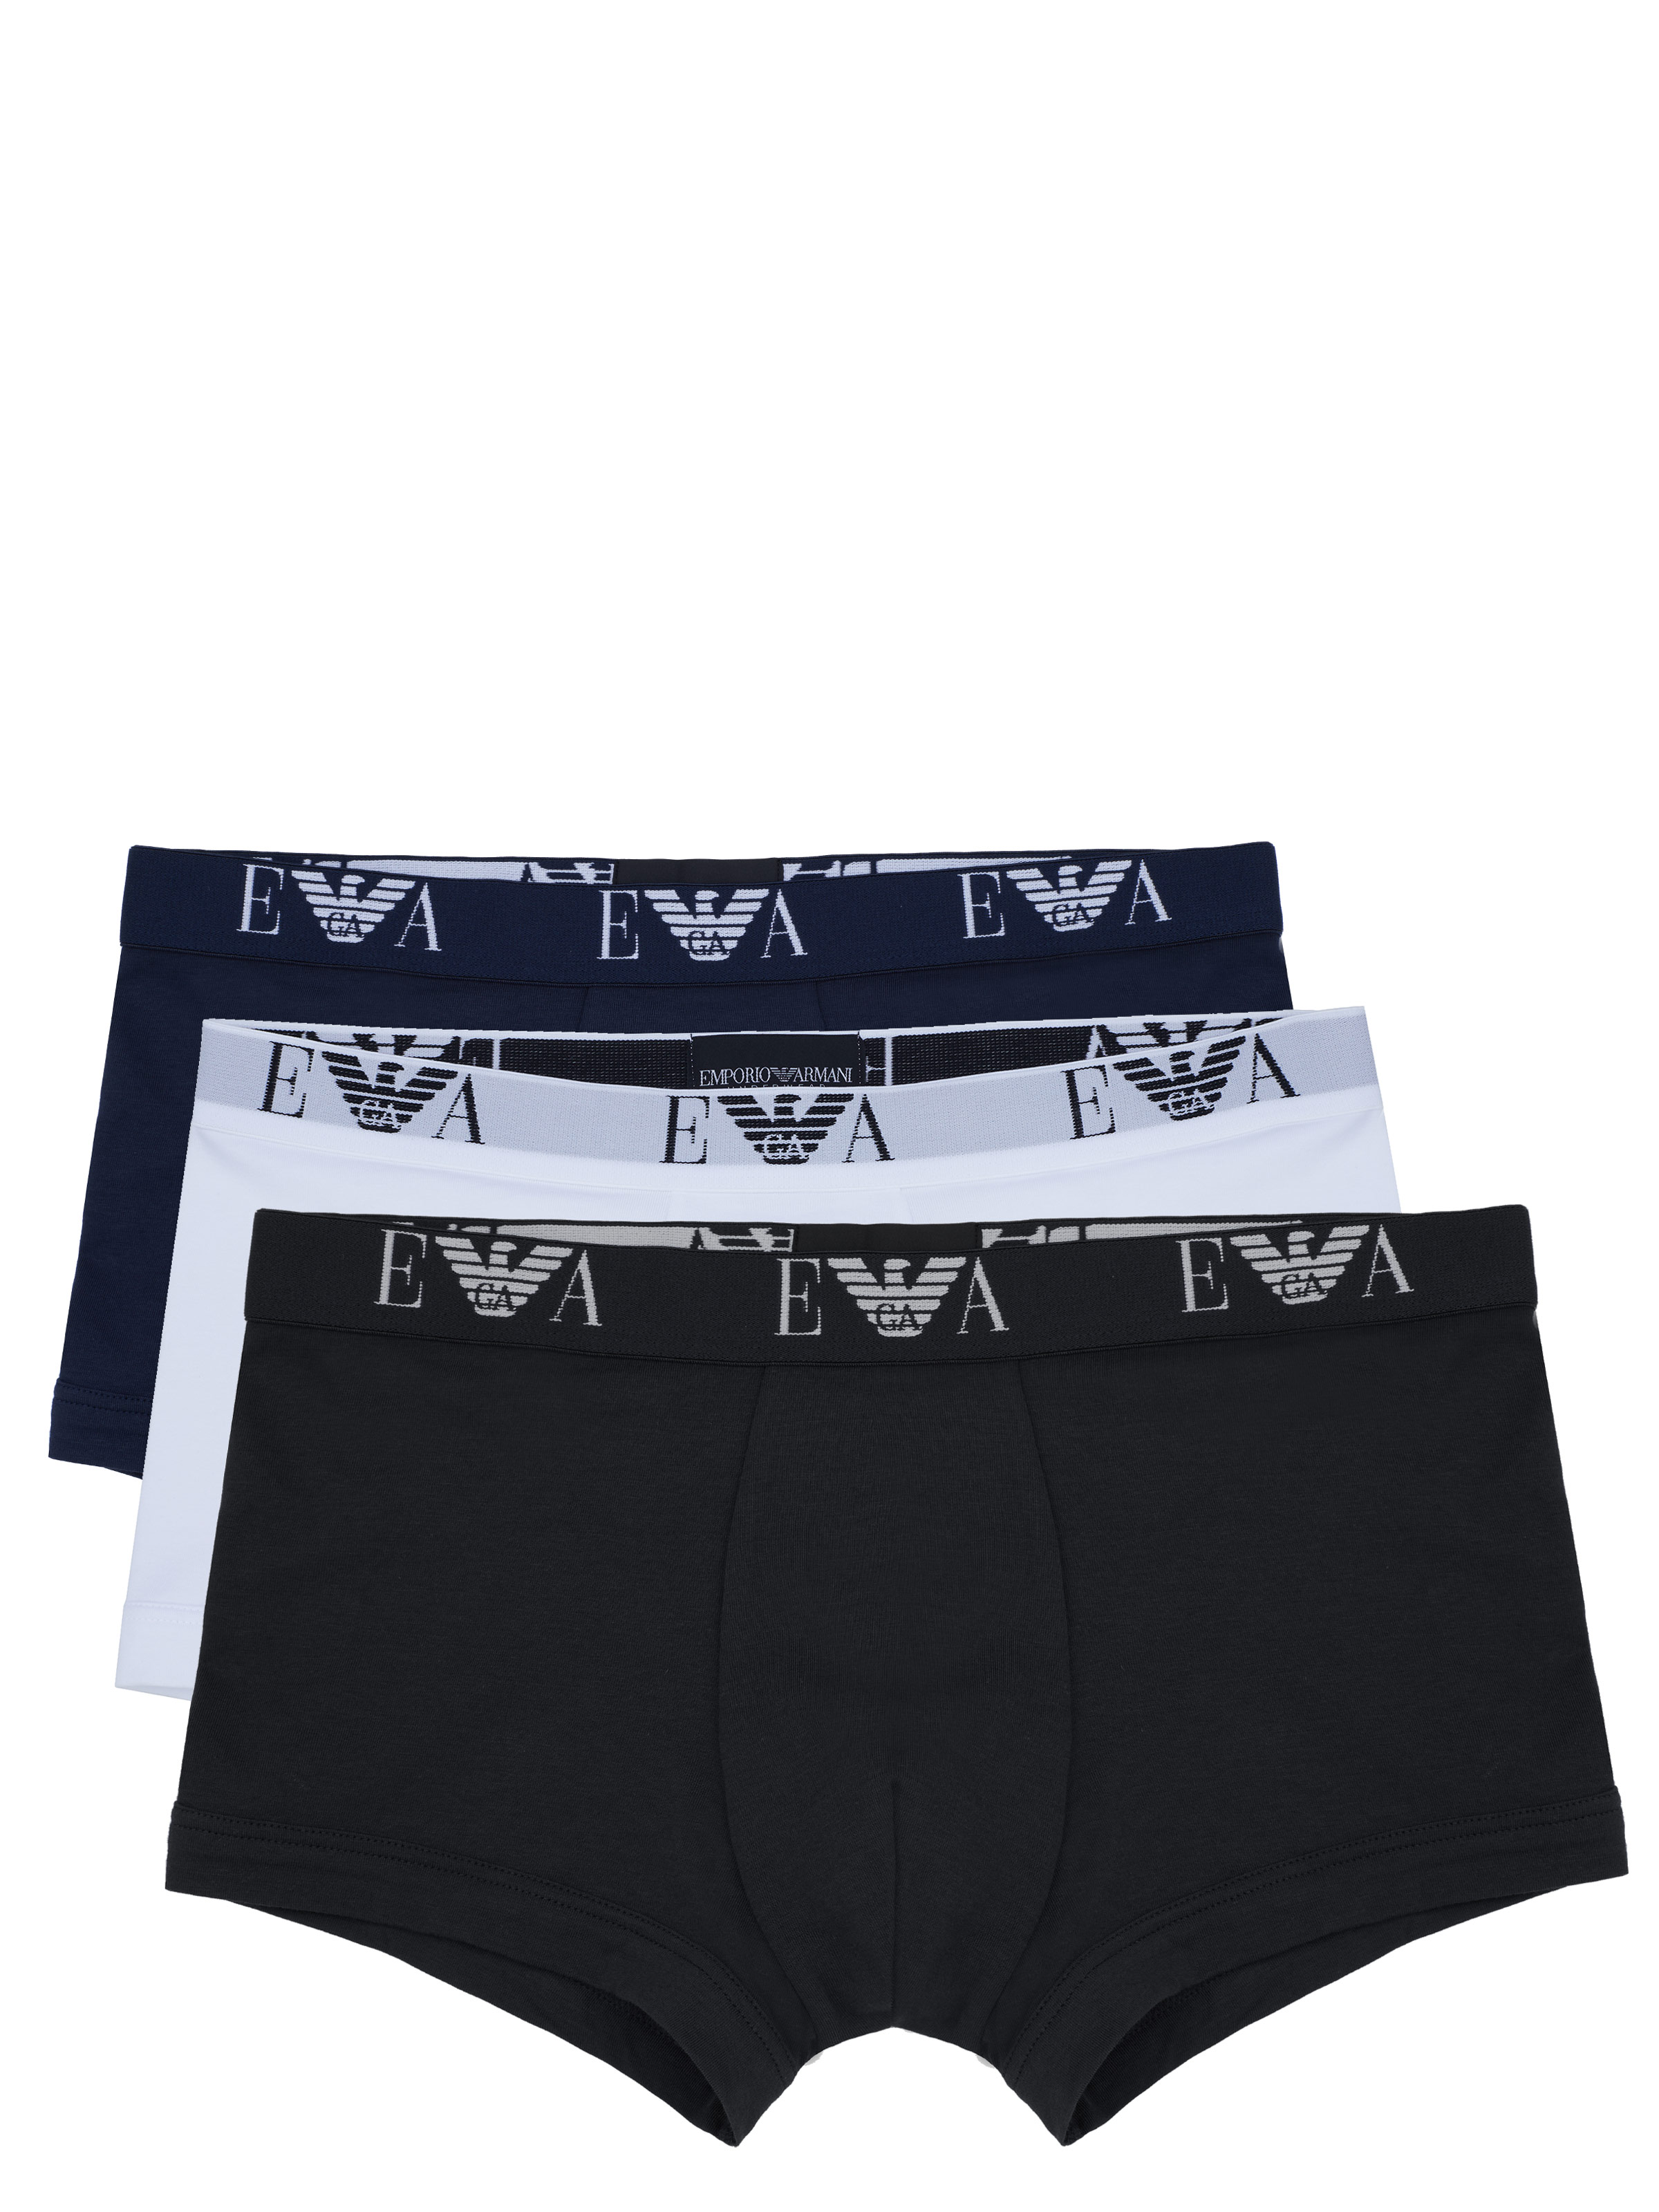 Emporio Armani underwear 3 Pack black / marine / white Multi-colored on  SALE